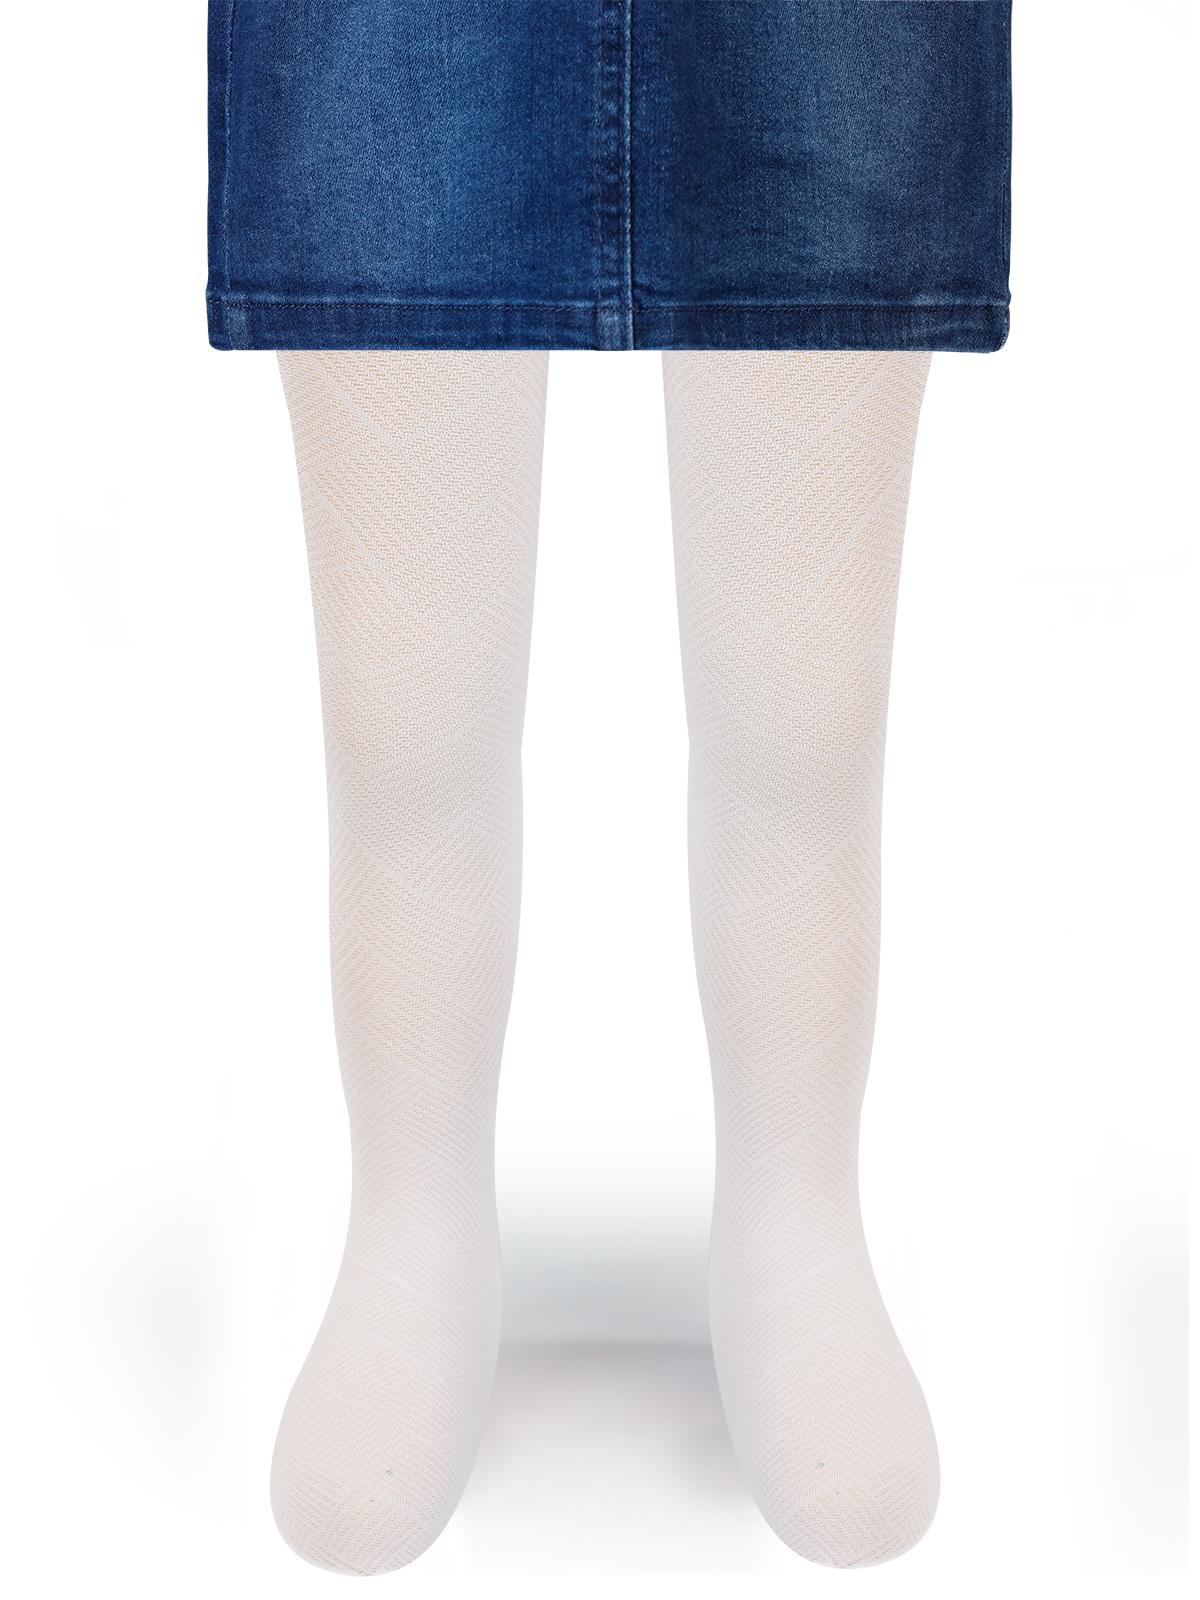 Artı Kız Çocuk Külotlu Çorap 2-11 Yaş Beyaz